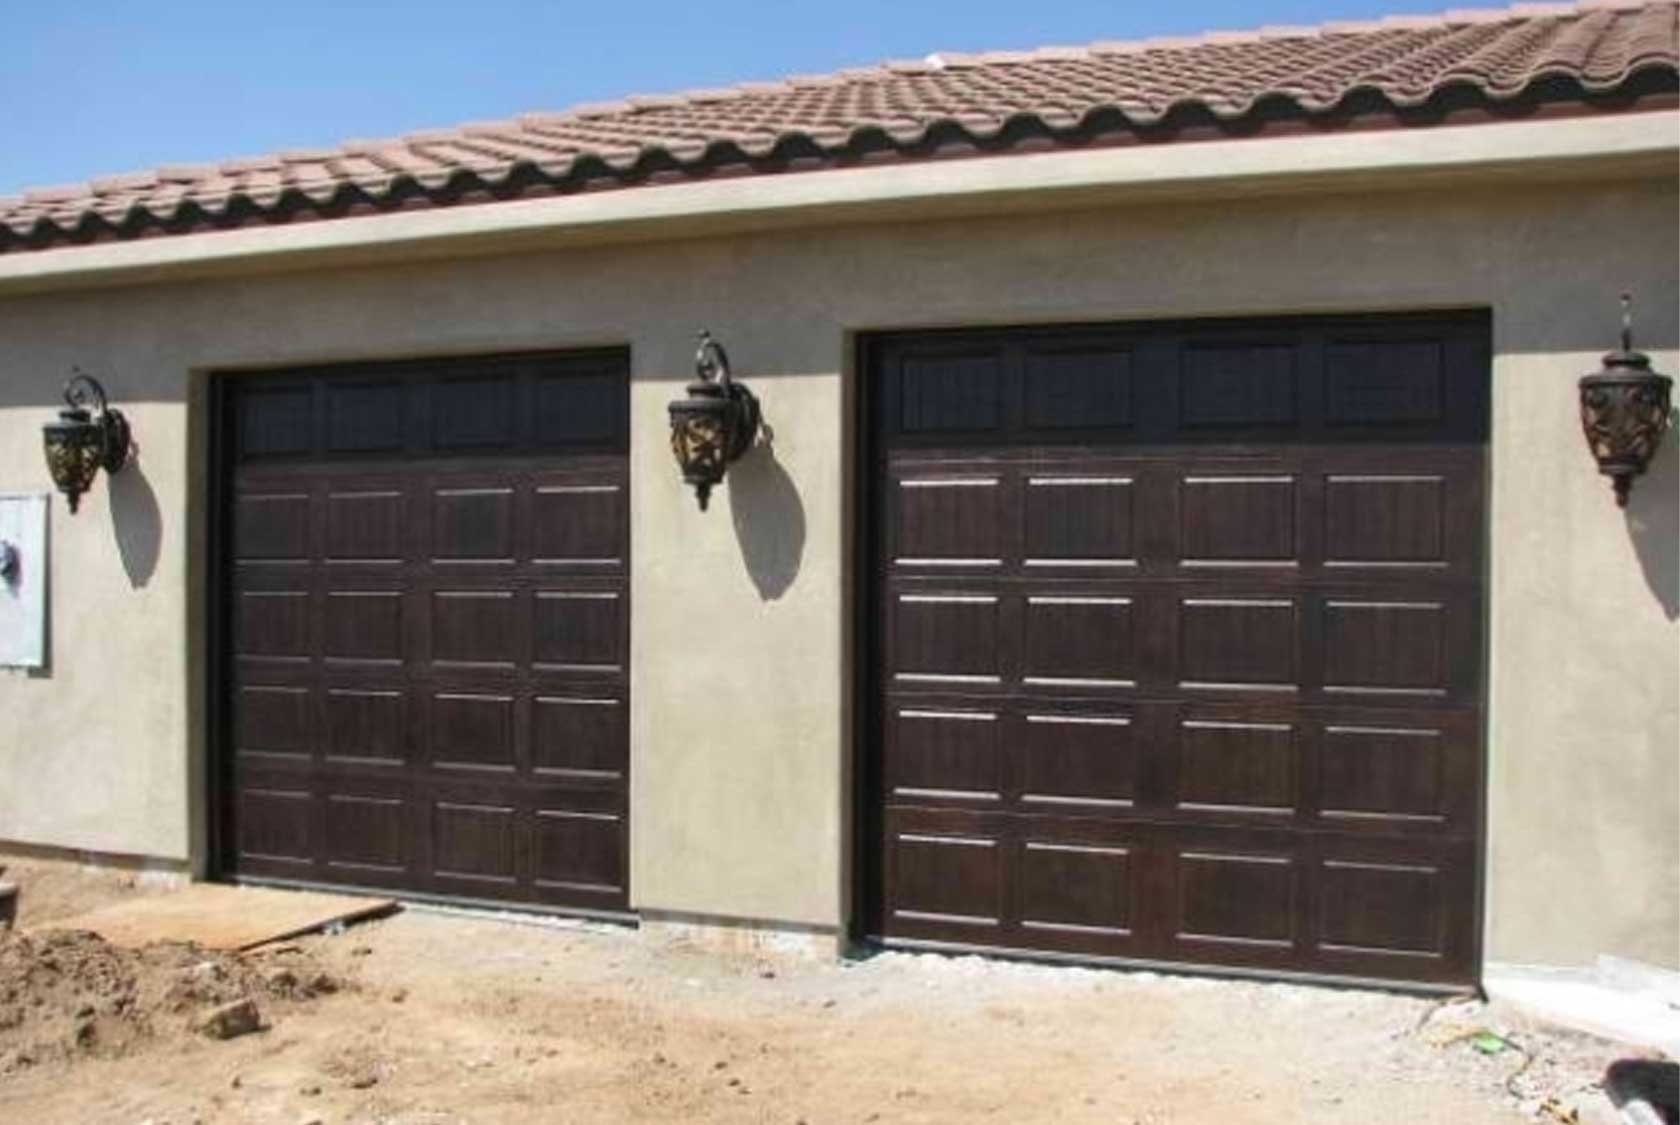 Engineering Masterpiece – Castaic Garage Doors